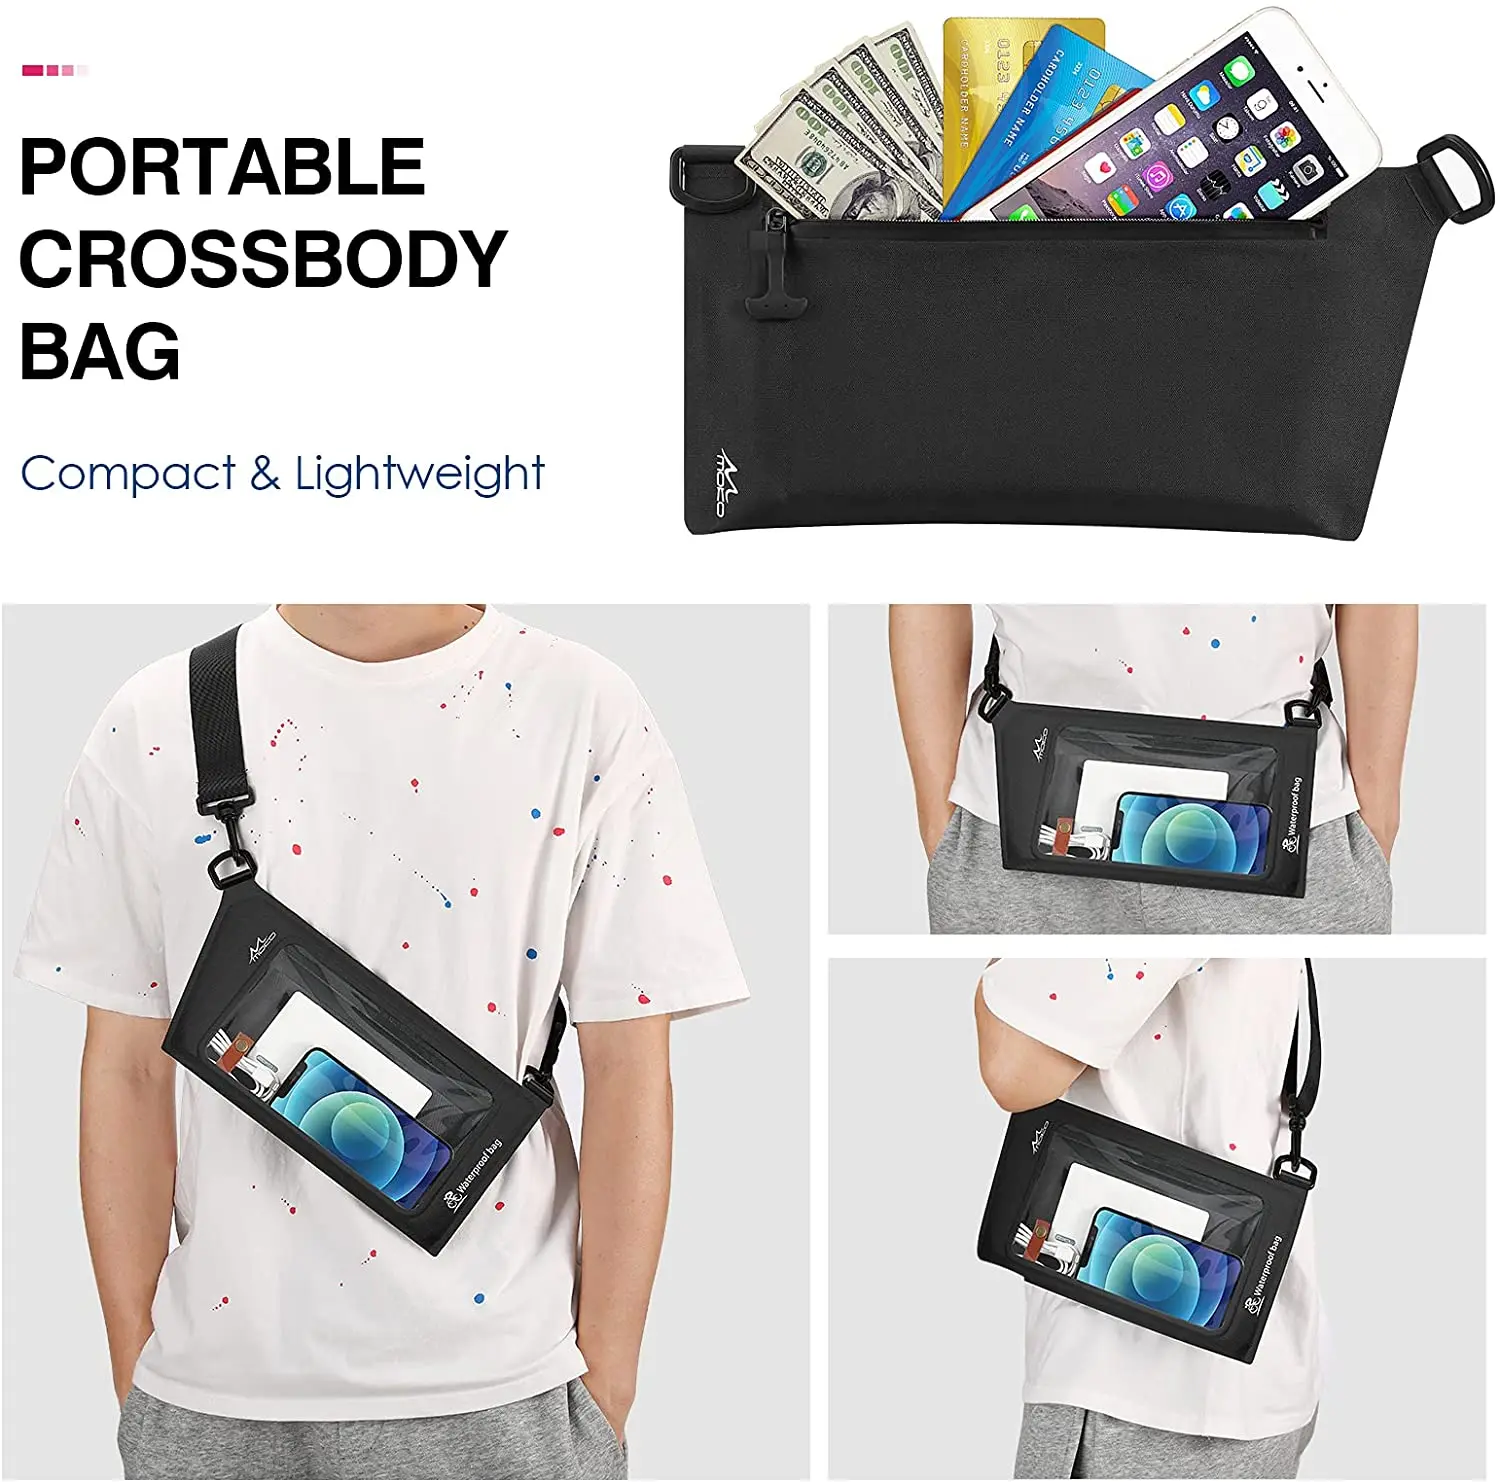 MoKo Waterproof Phone Pouch Wallet Bag, IPX8 Adjustable Sling